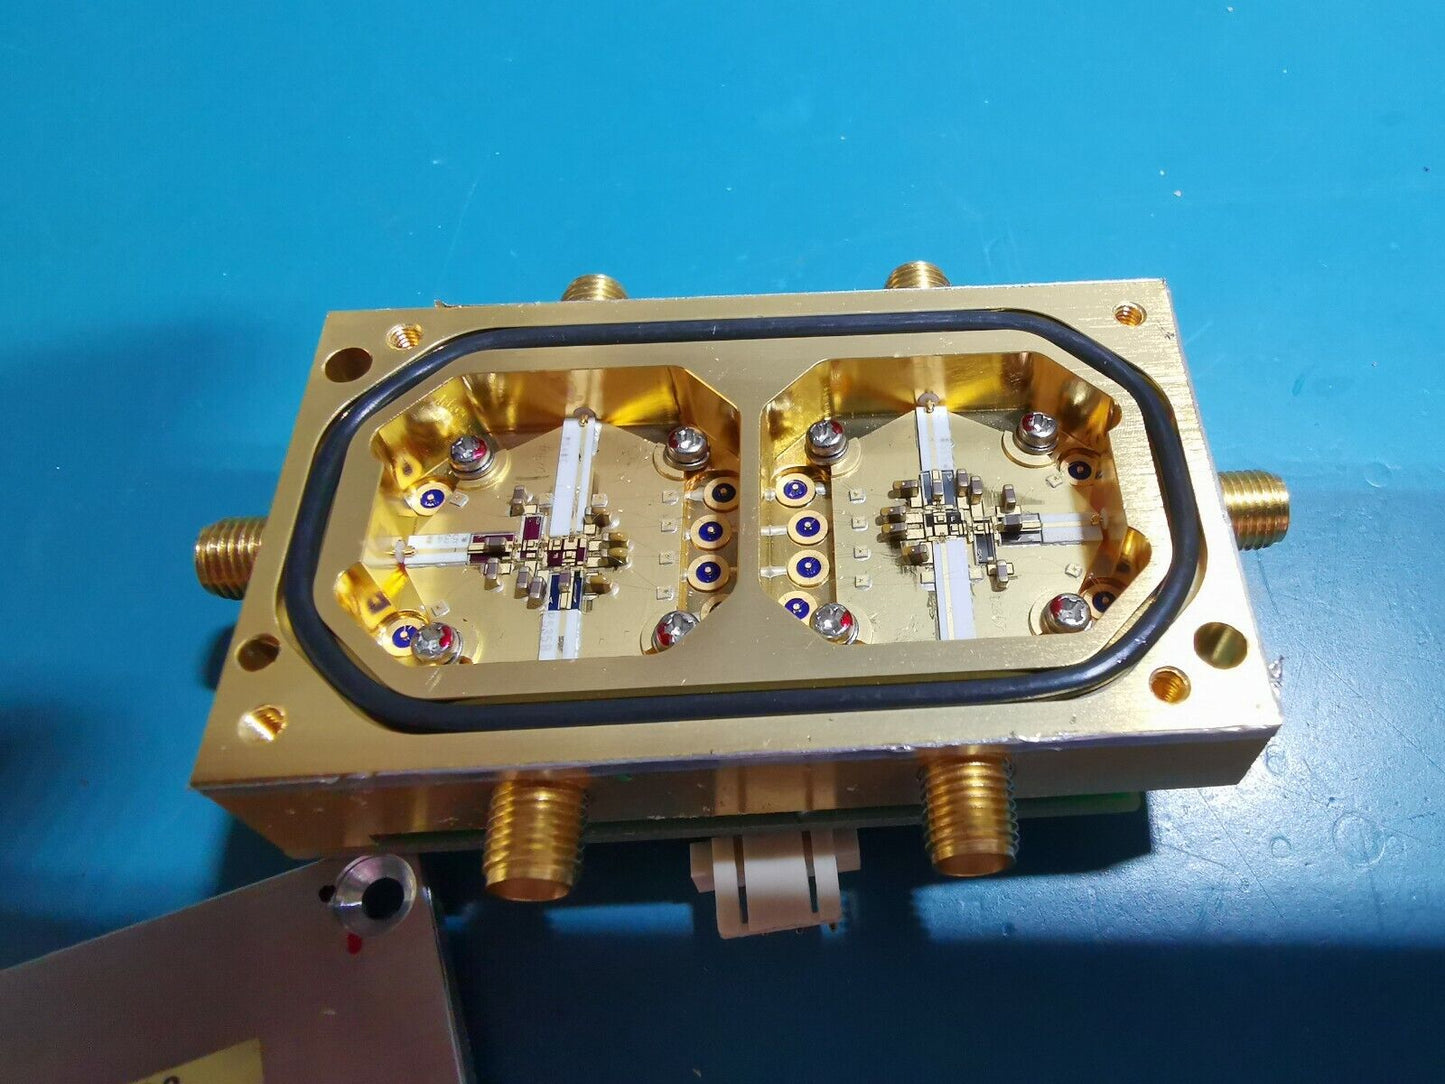 RF Module Clock Dist From A 12GHz Test Gear THD144